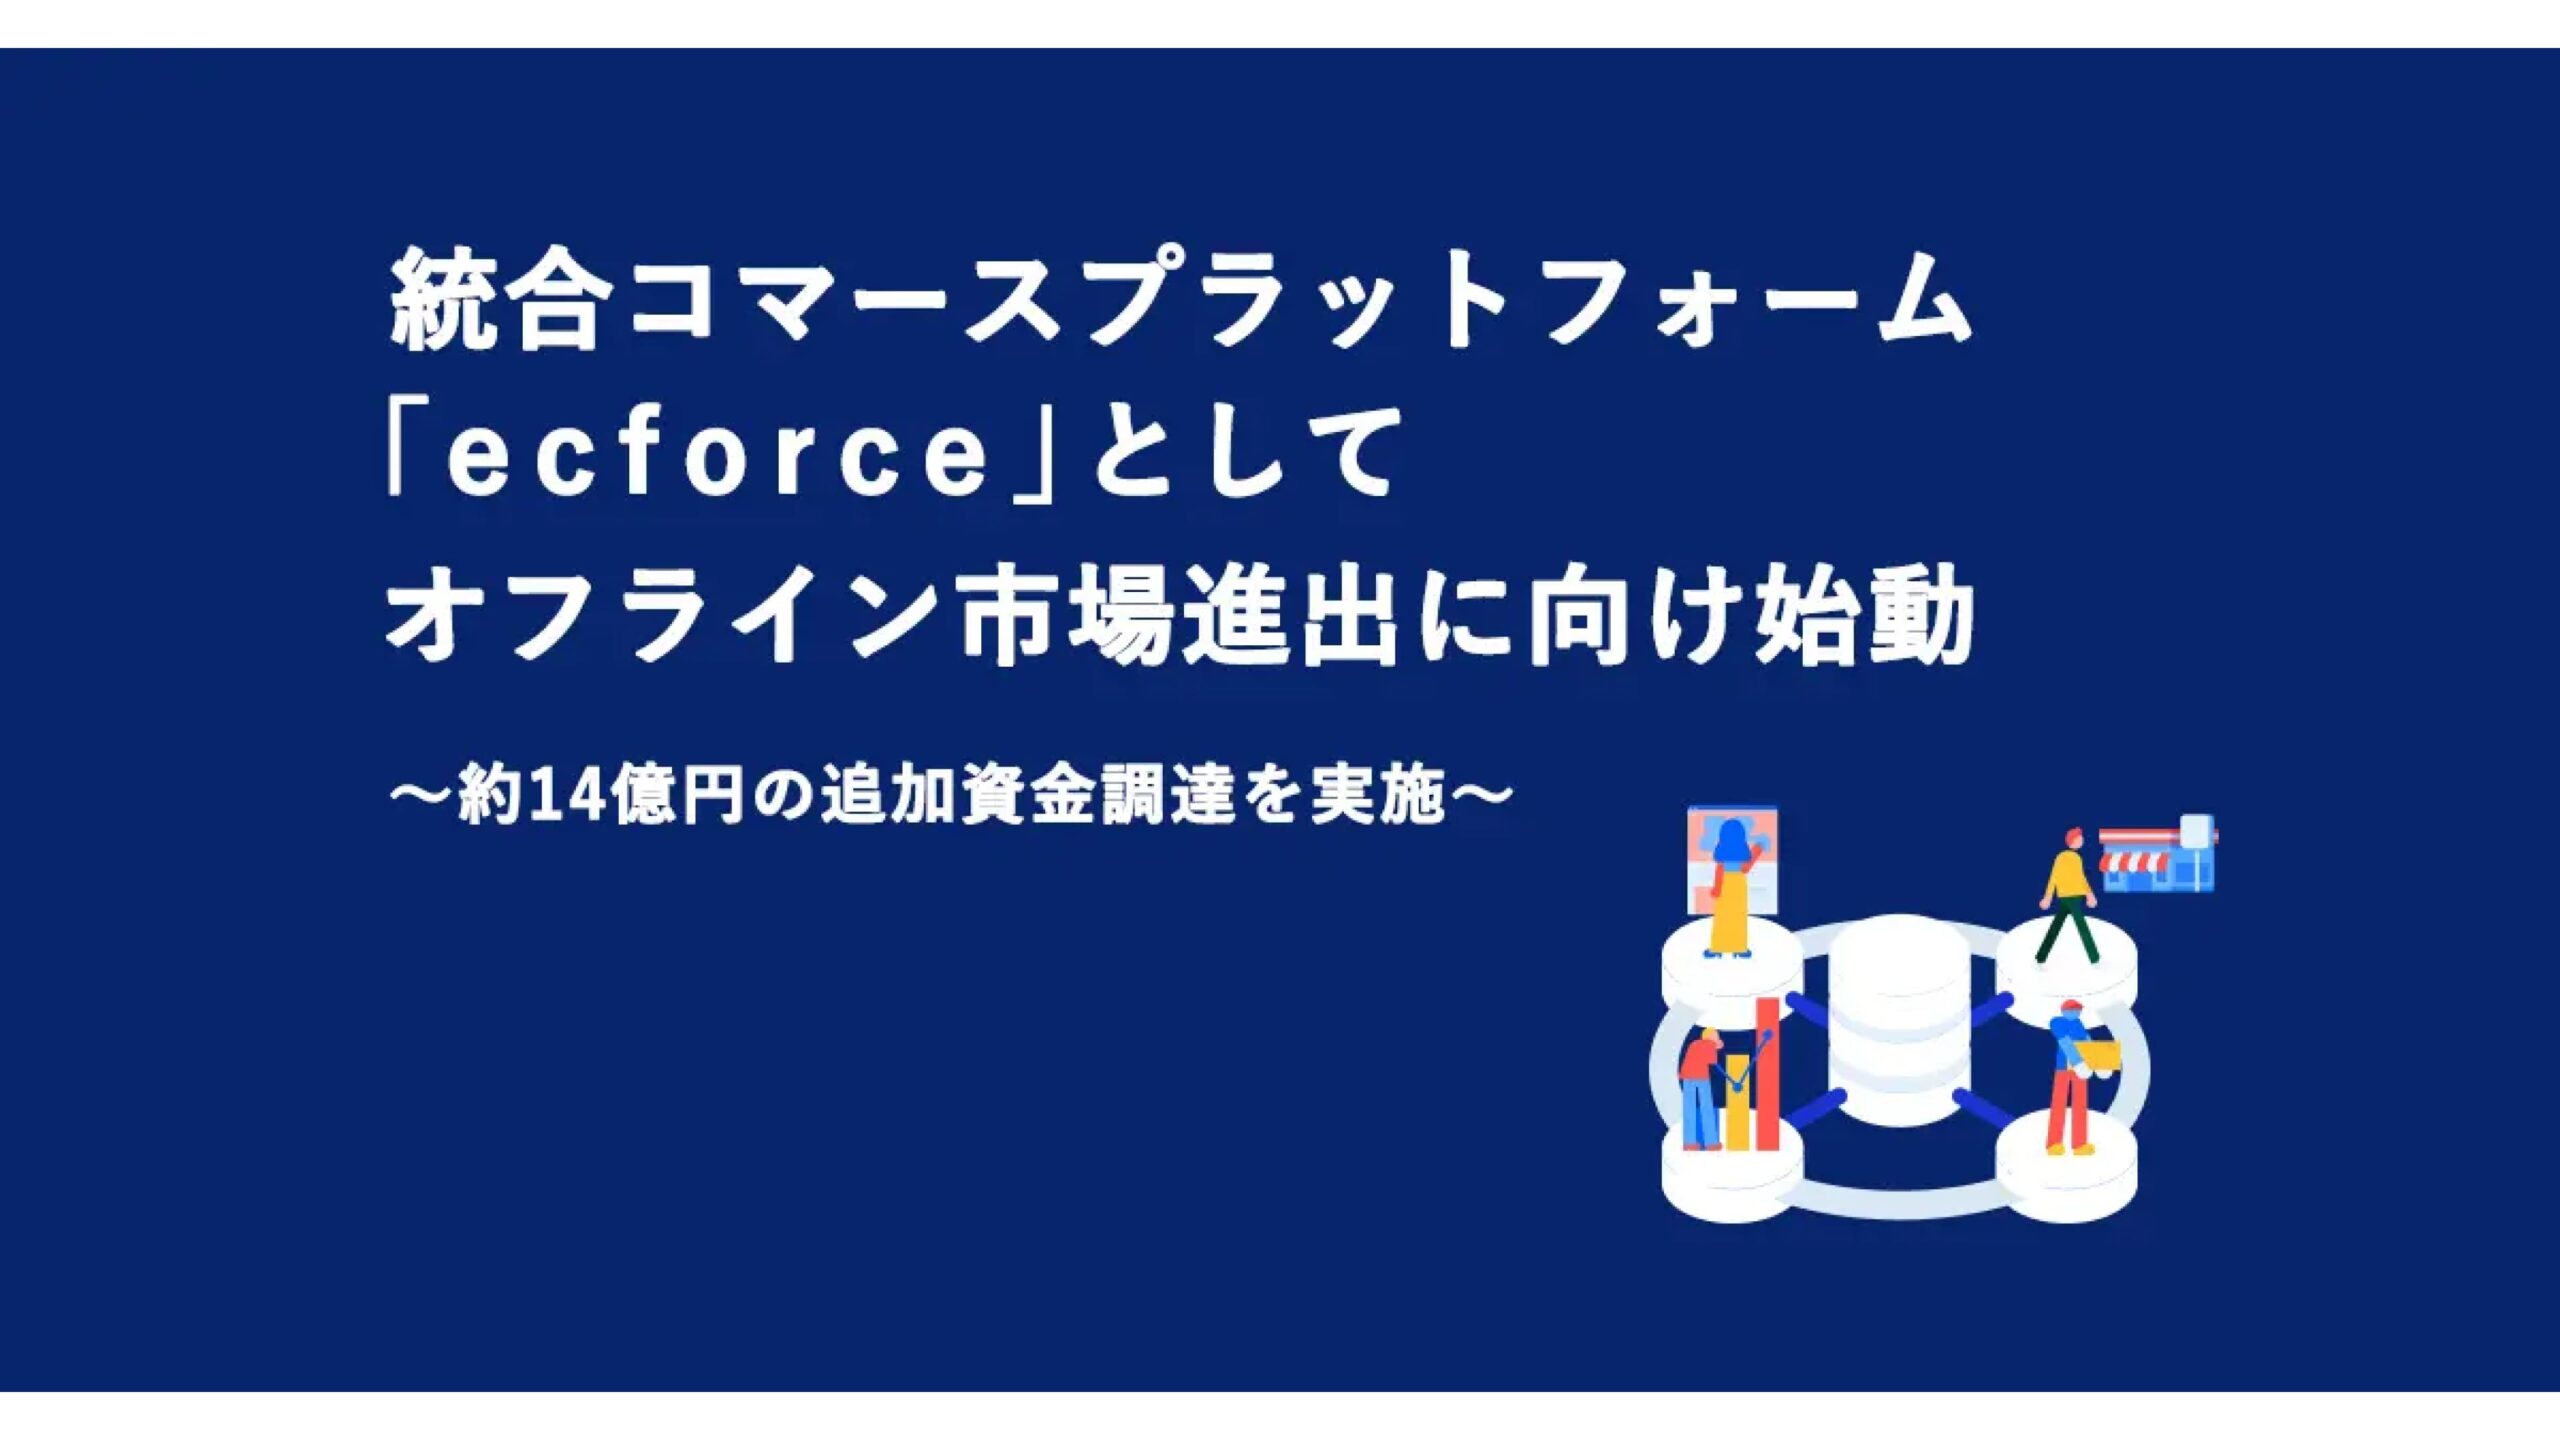 統合コマースプラットフォーム『ecforce』を提供する株式会社SUPER STUDIOが14億円の資金調達ー累計調達額は84億円に